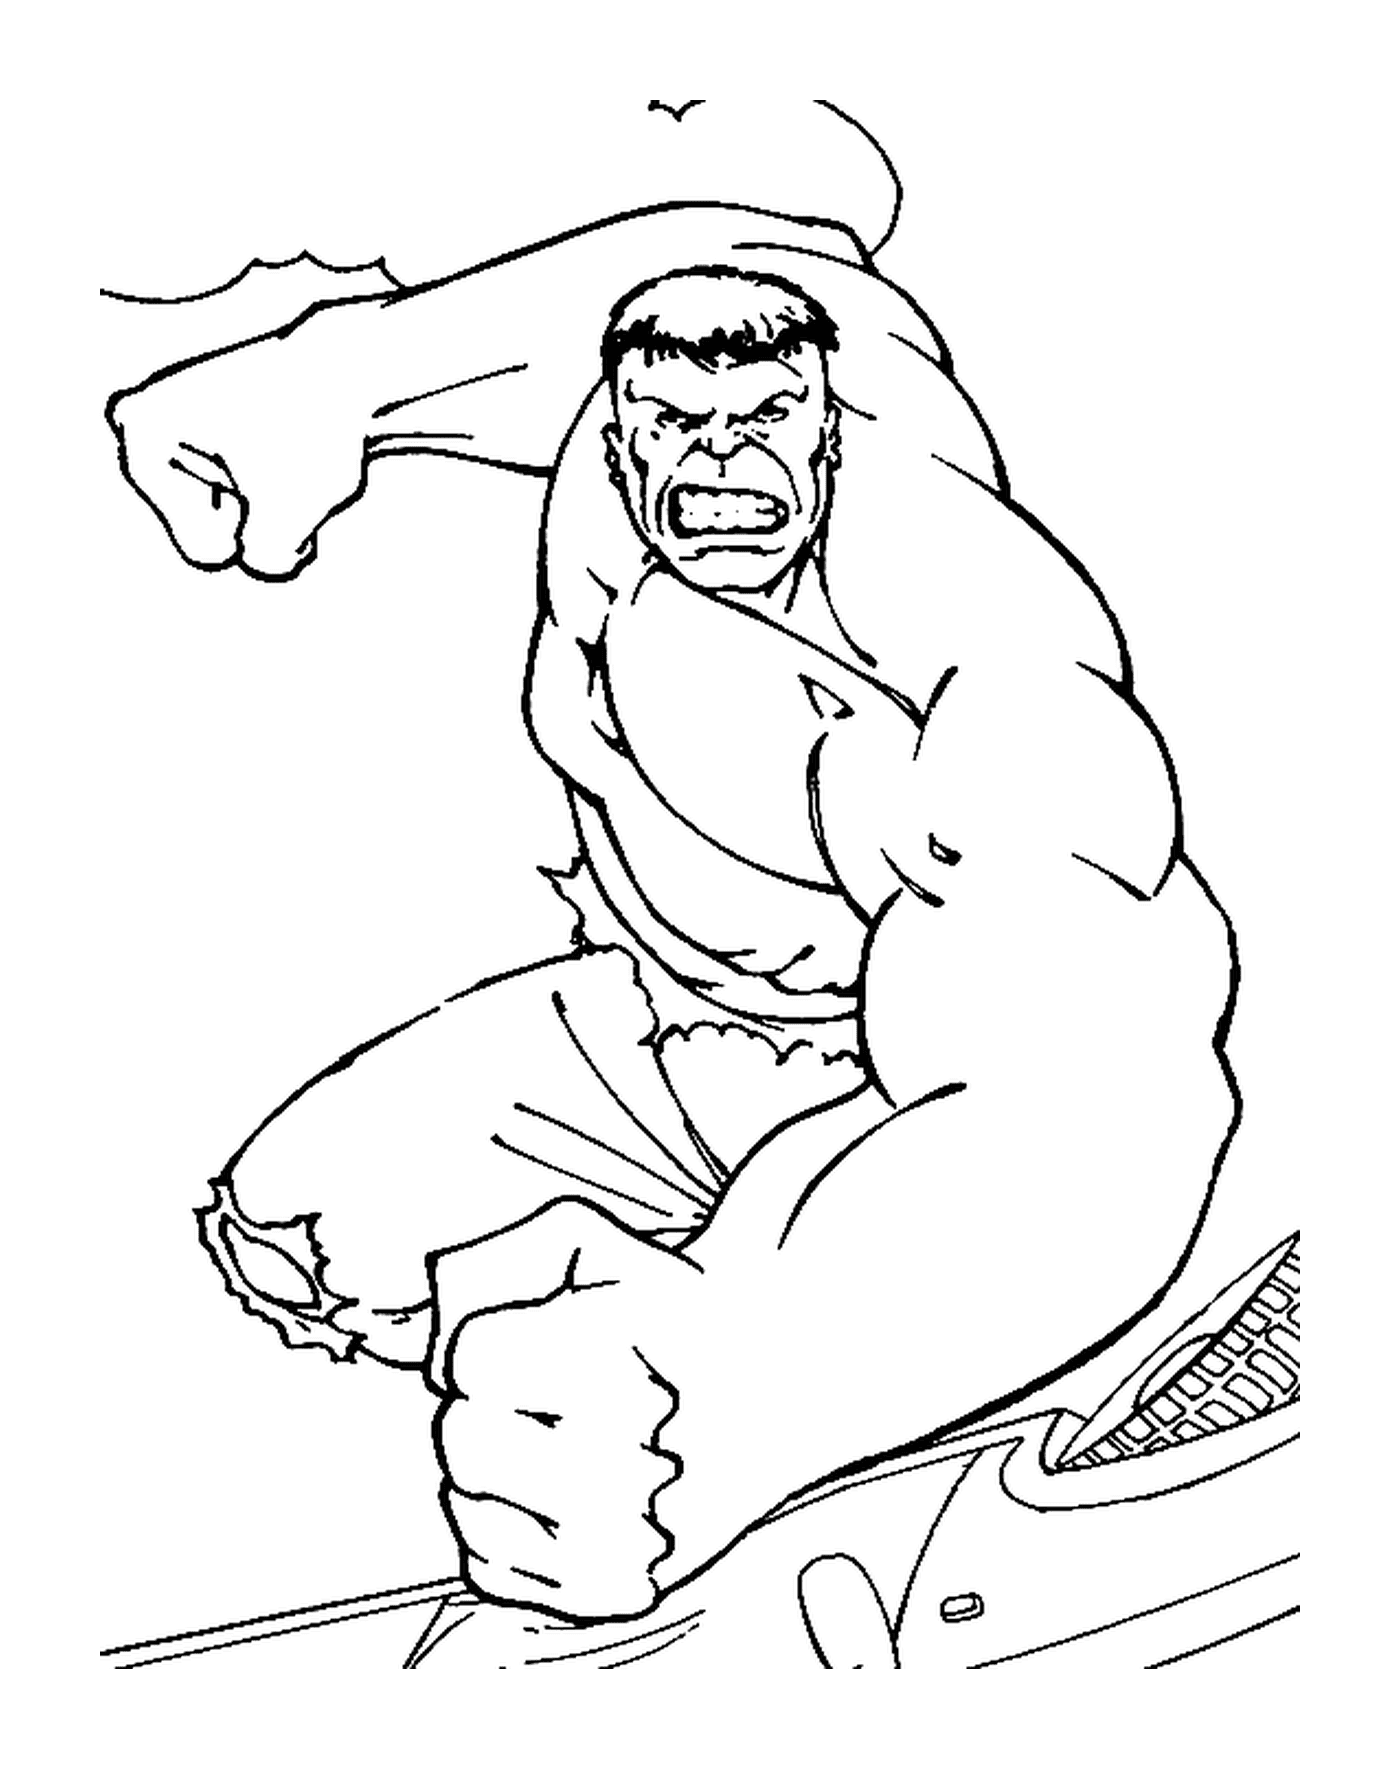   Hulk en colère contre une porte 